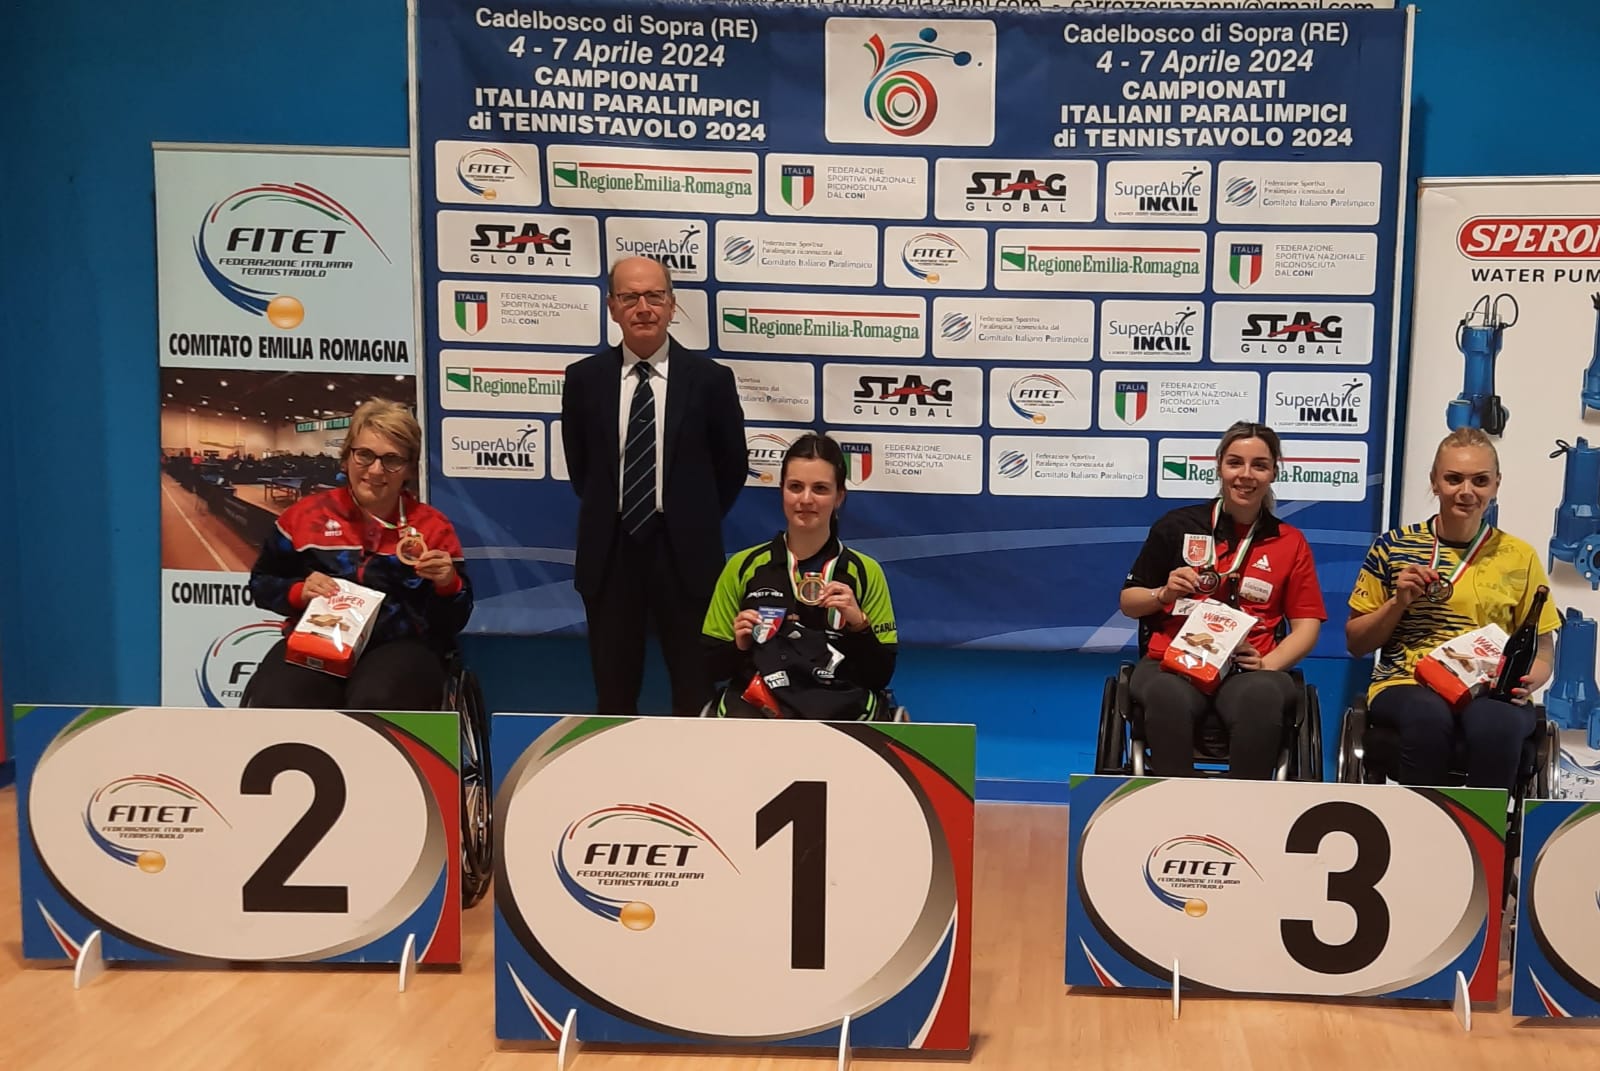 Campionati Italiani Paralimpici di Cadelbosco 2024 podio del singolare femminile di classe 3